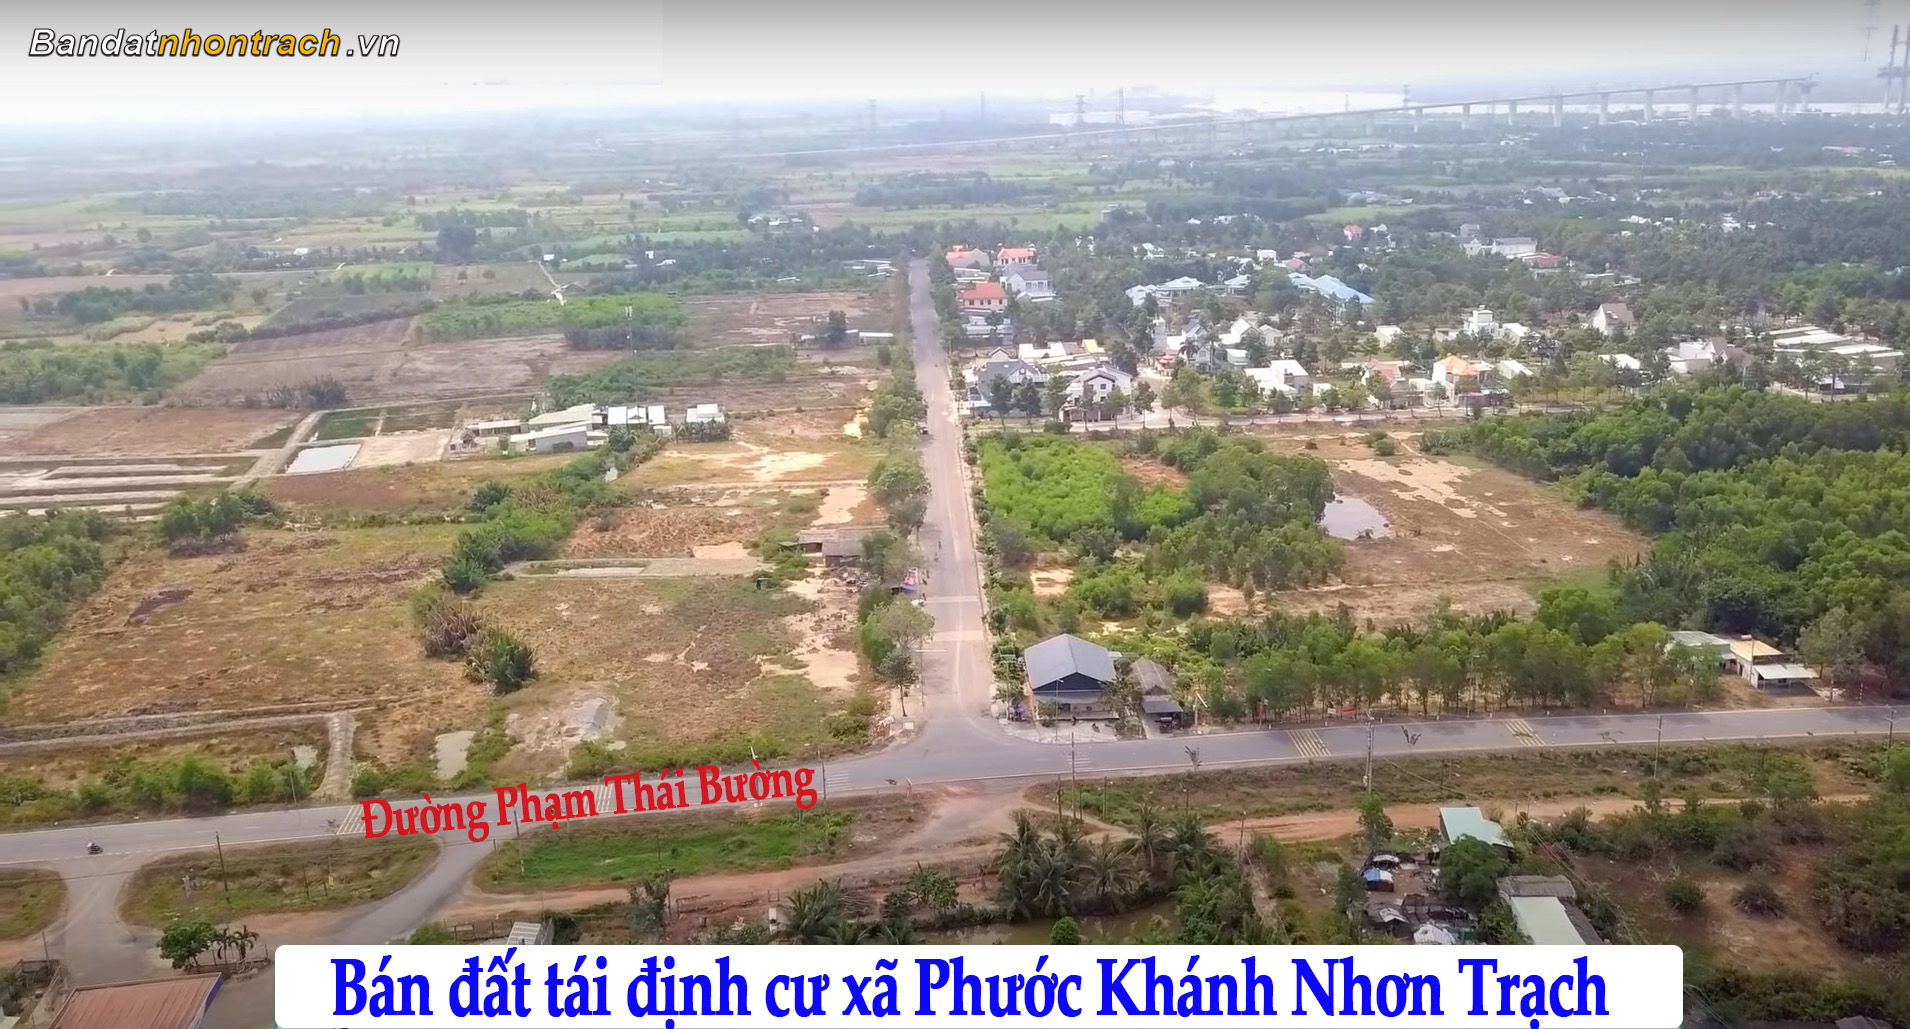 Bán đất Nhơn Trạch đất tái định cư Phước Khánh diện tích 91m2 giá 1.85tỷ